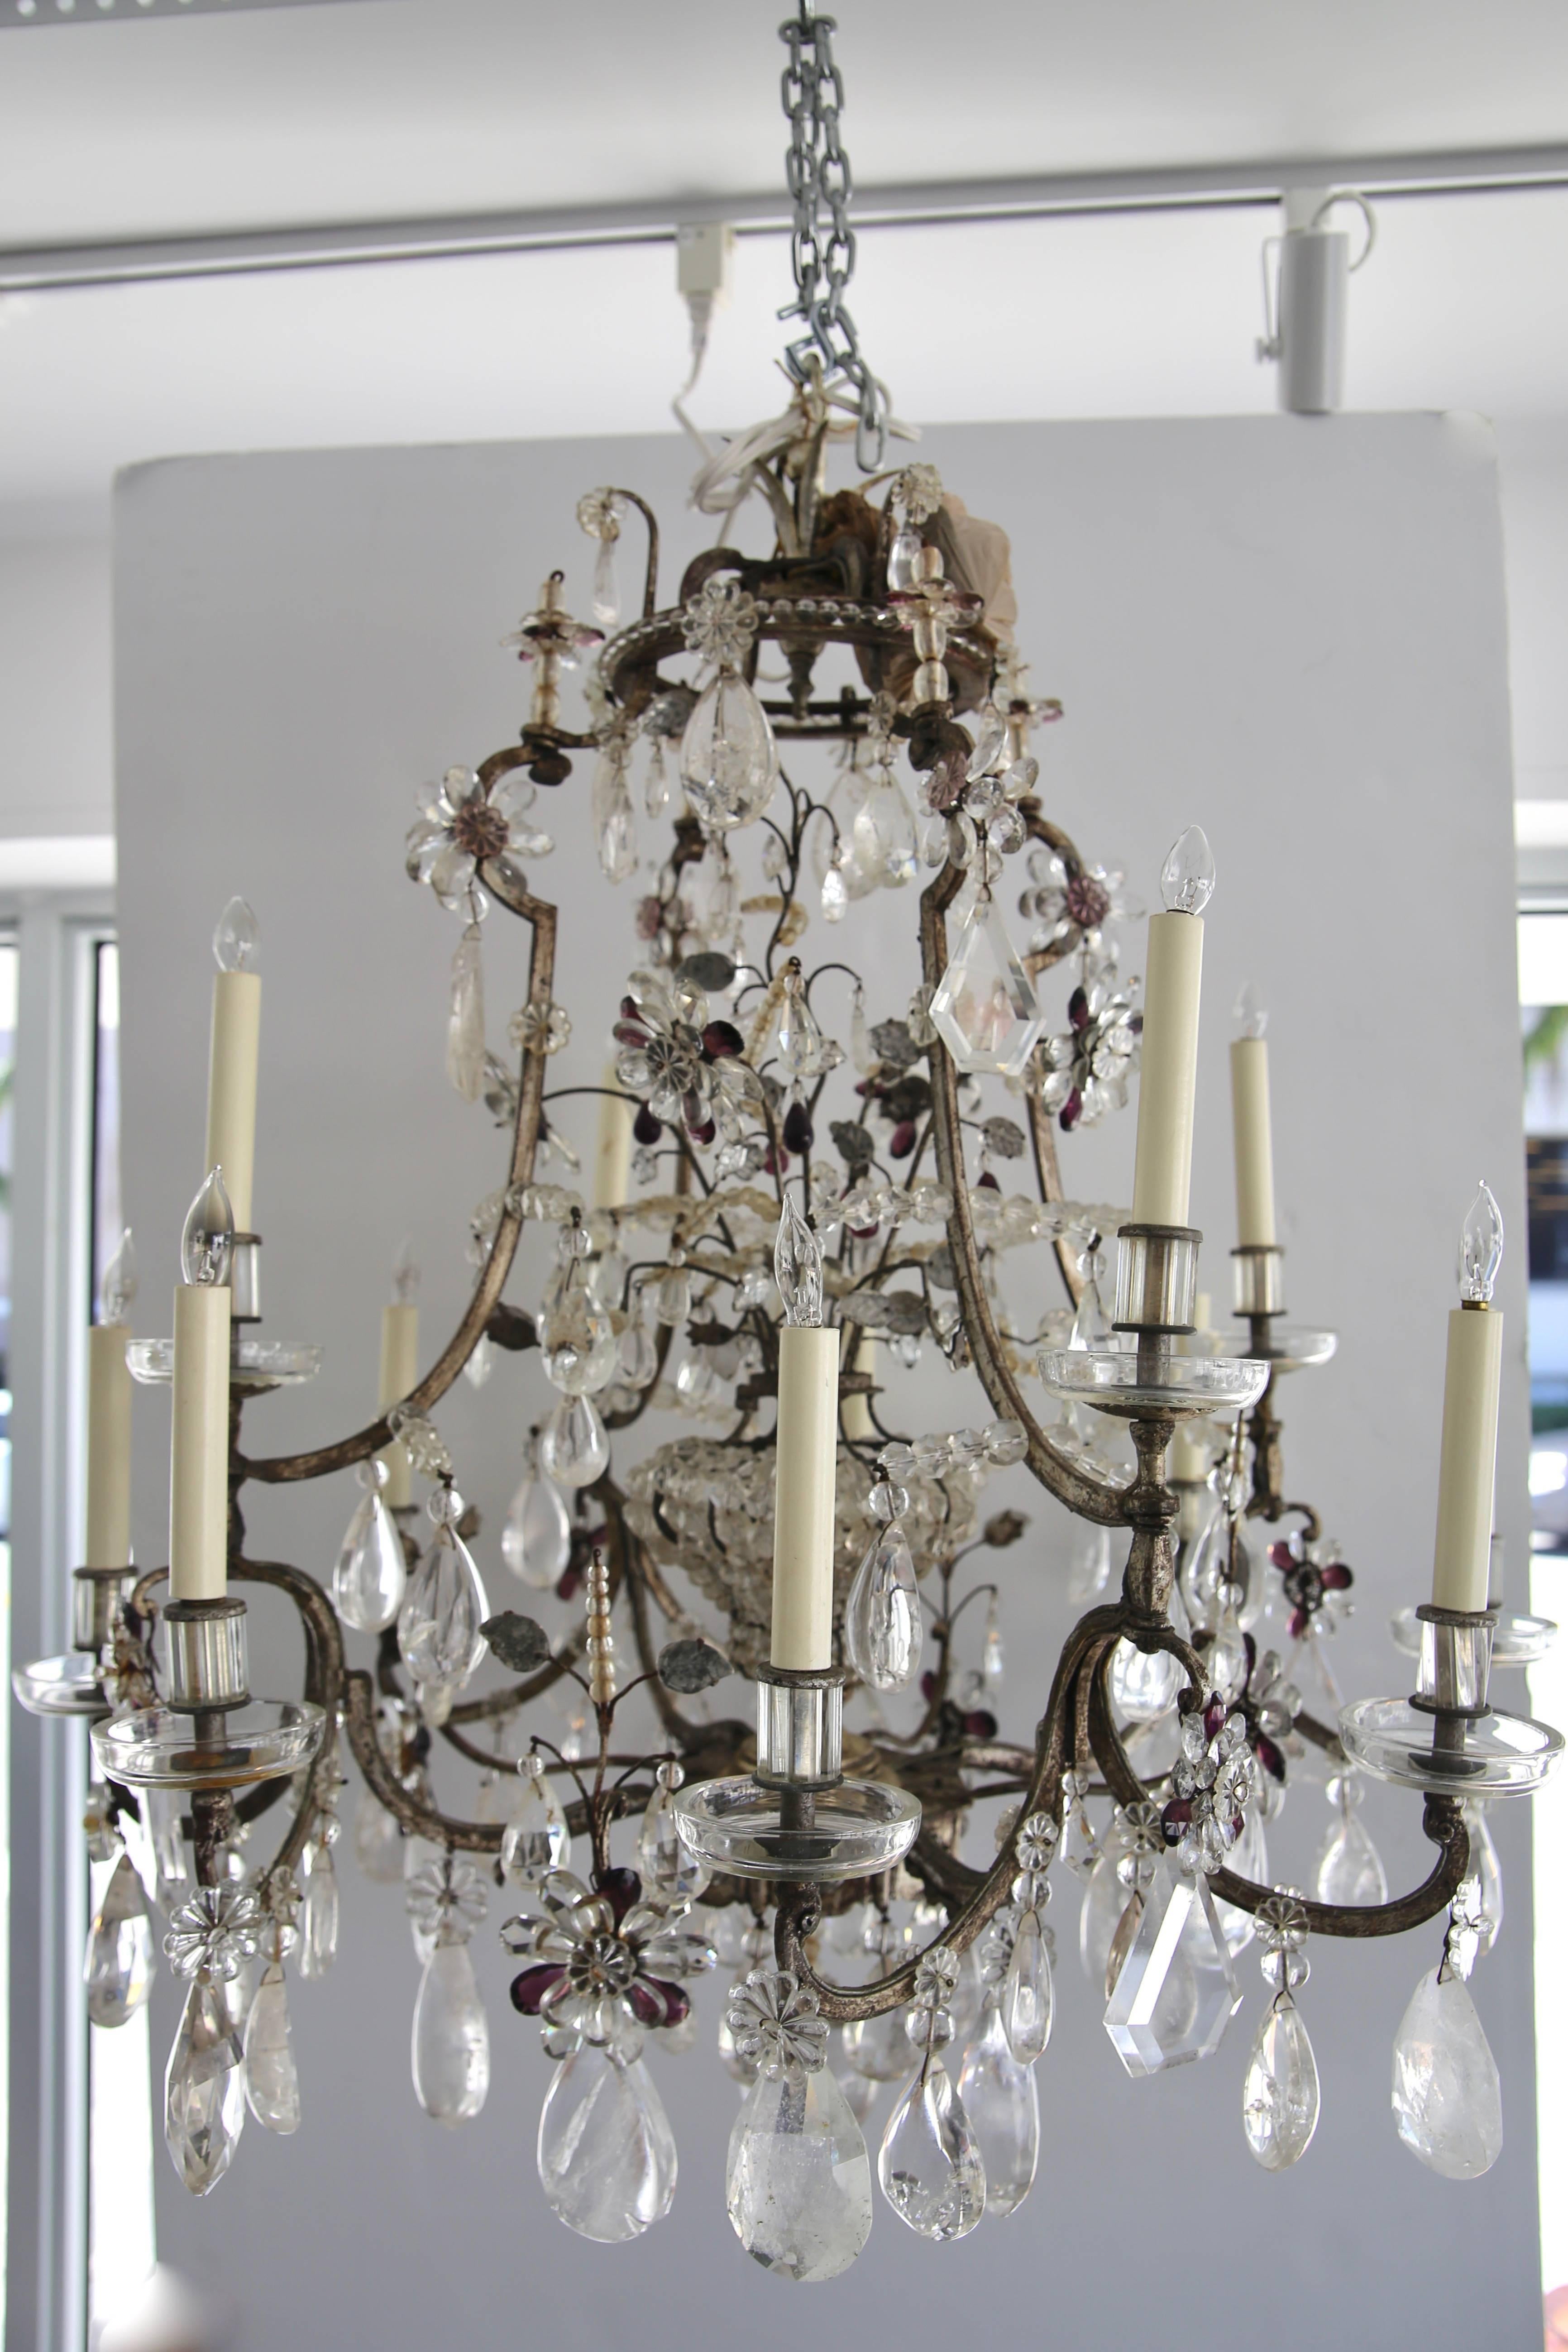 Ce lustre en cristal de roche de grande taille, élégant et chic, a été créé par l'emblématique Maison Baguès. Il est de style Louis XV avec ses 12 chandelles et sa cage intérieure en cristal dotée d'une seule ampoule. Le cadre en acier est argenté à